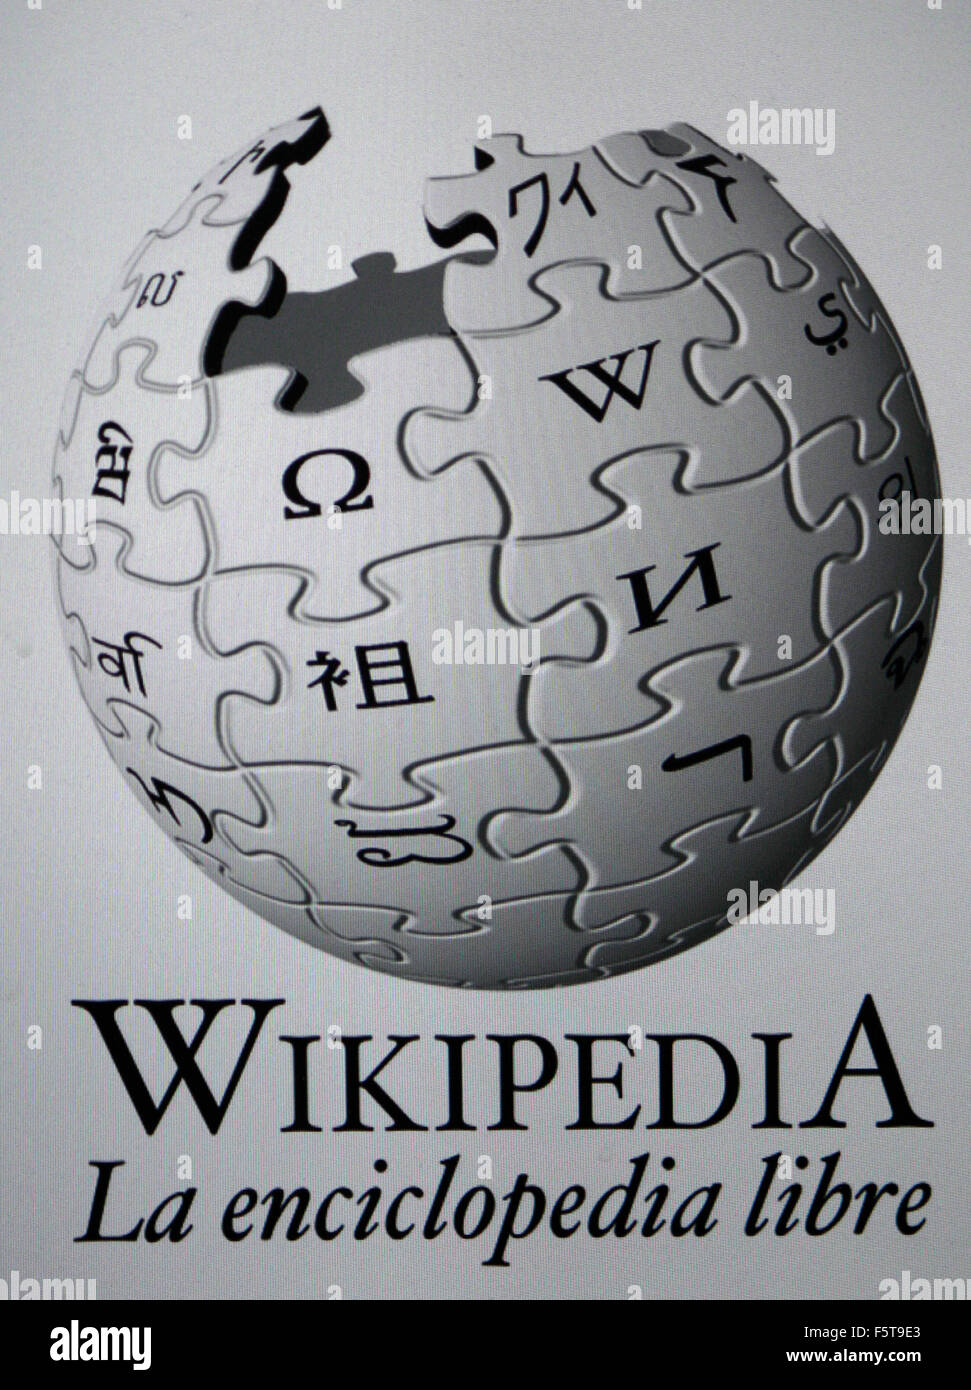 iPhone 4 - Wikipedia, la enciclopedia libre